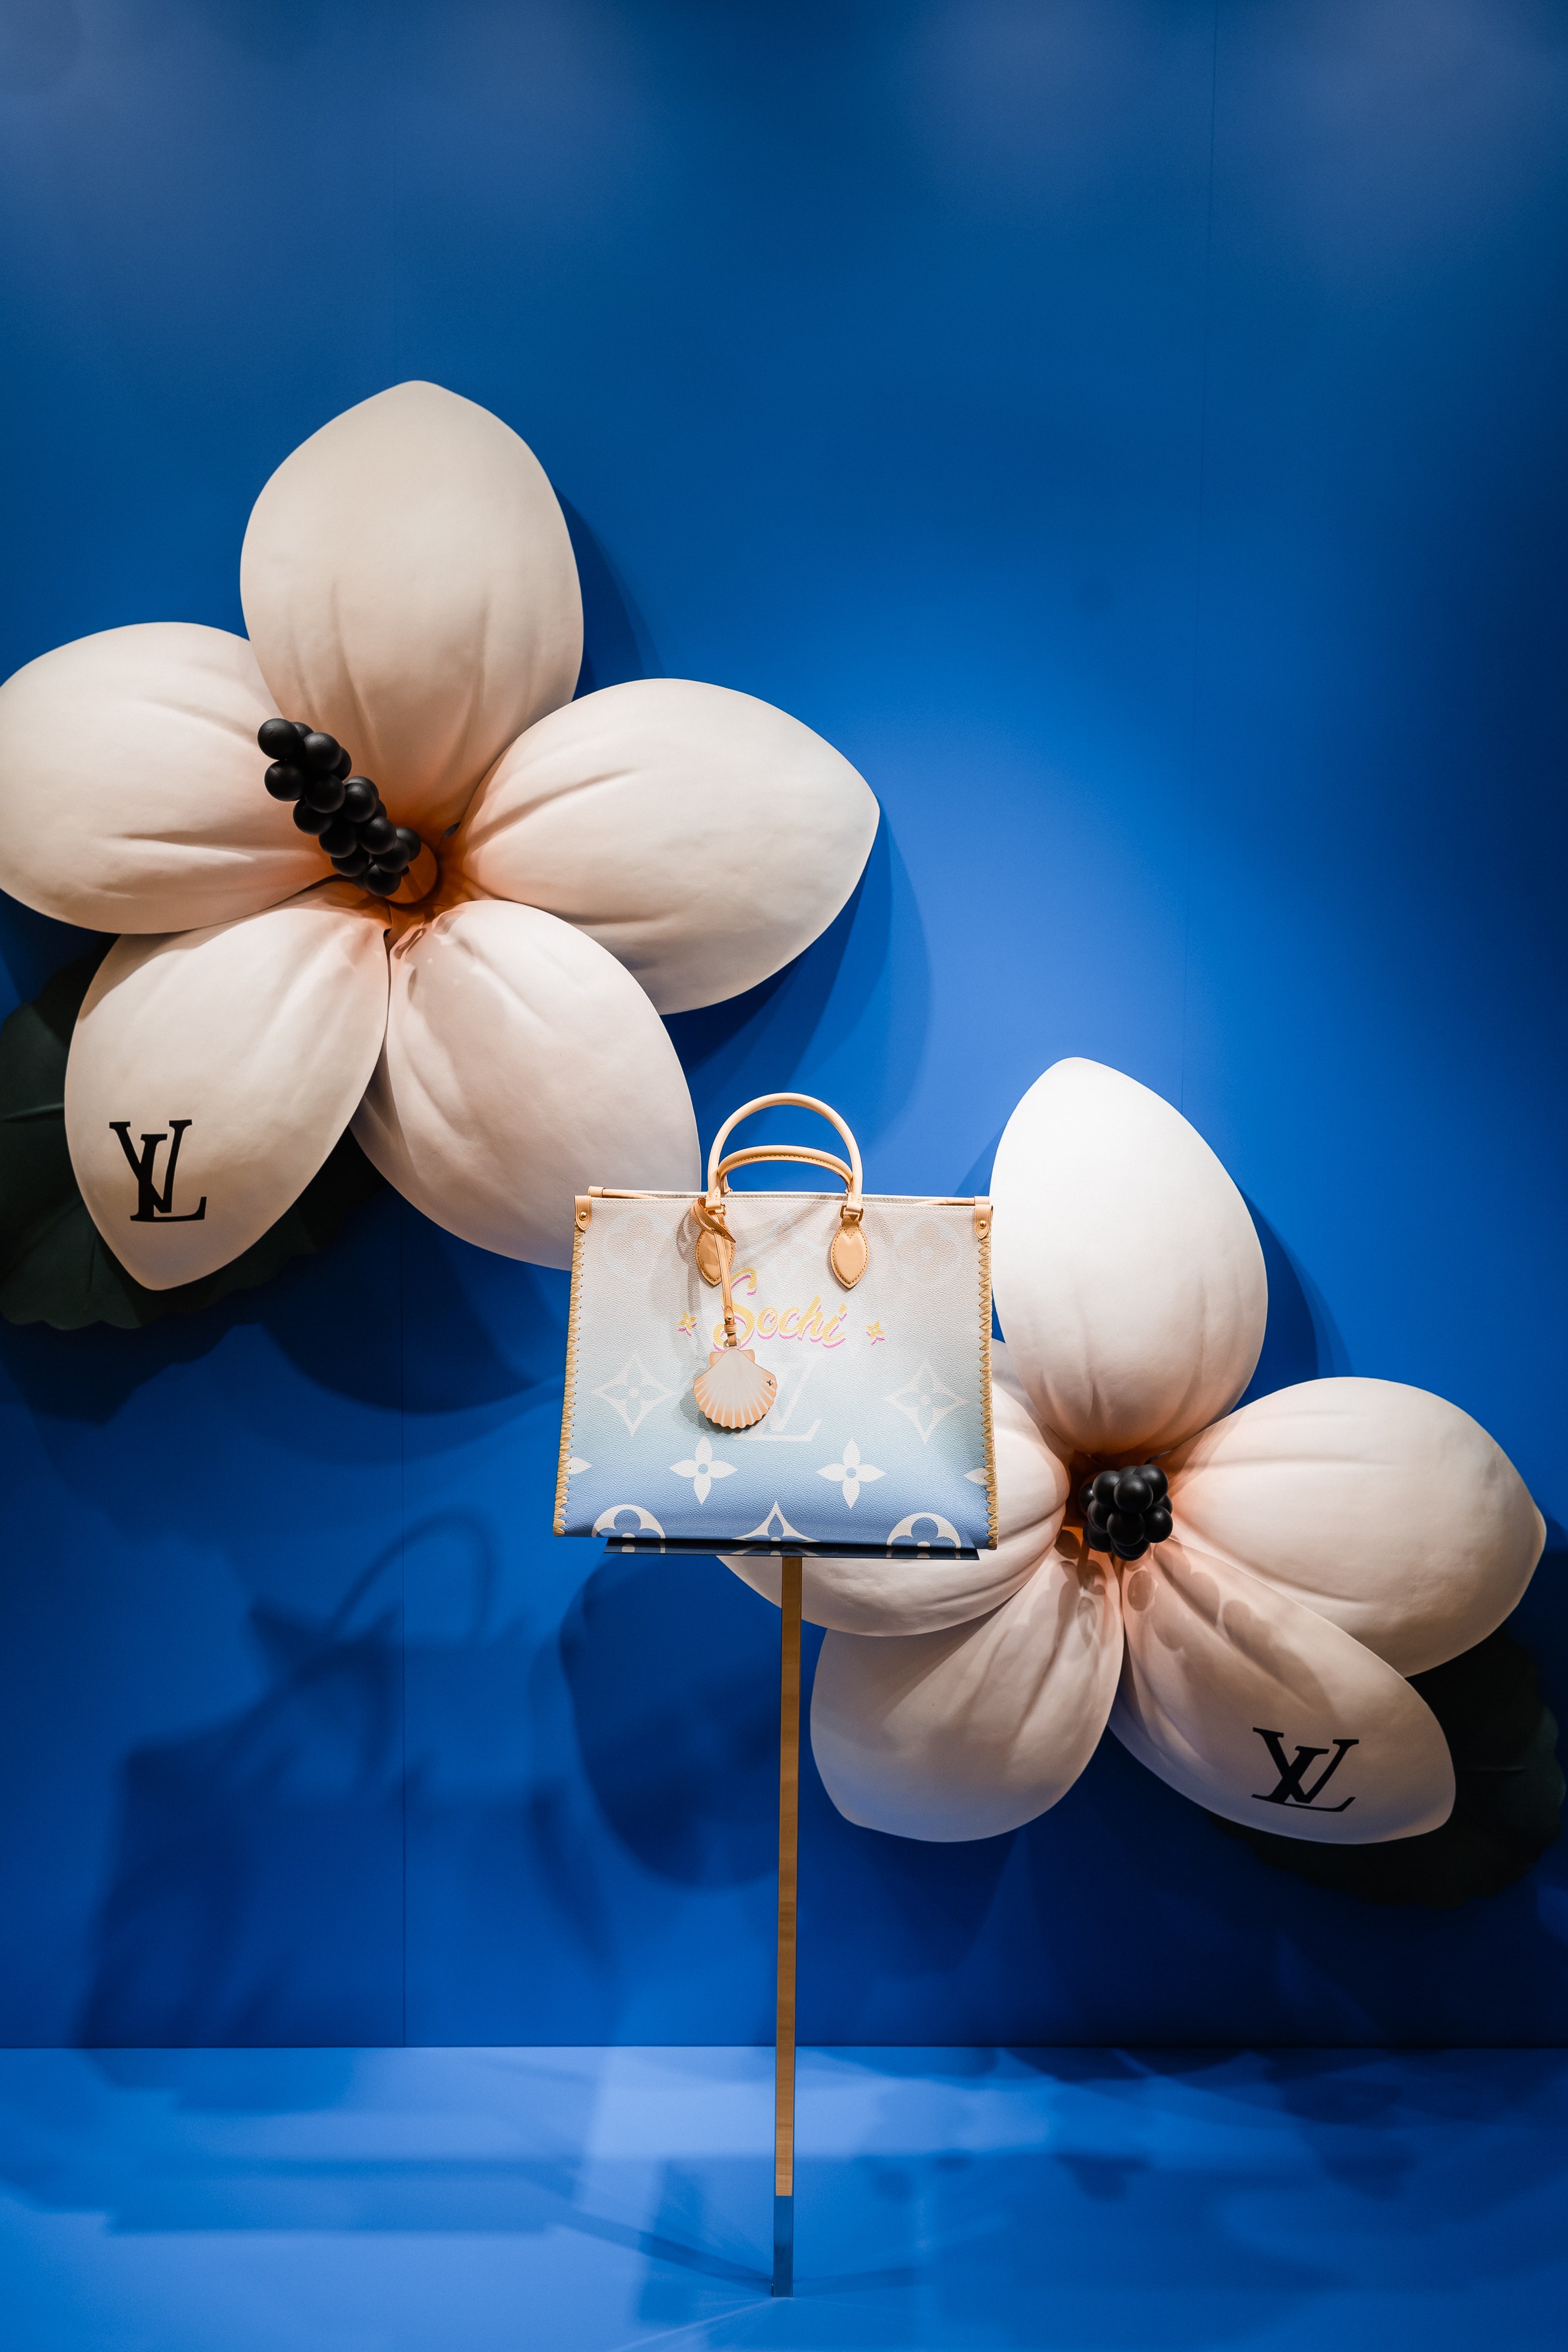 Louis Vuitton впервые представили сумку с названием русского города (догадайтесь какого!)